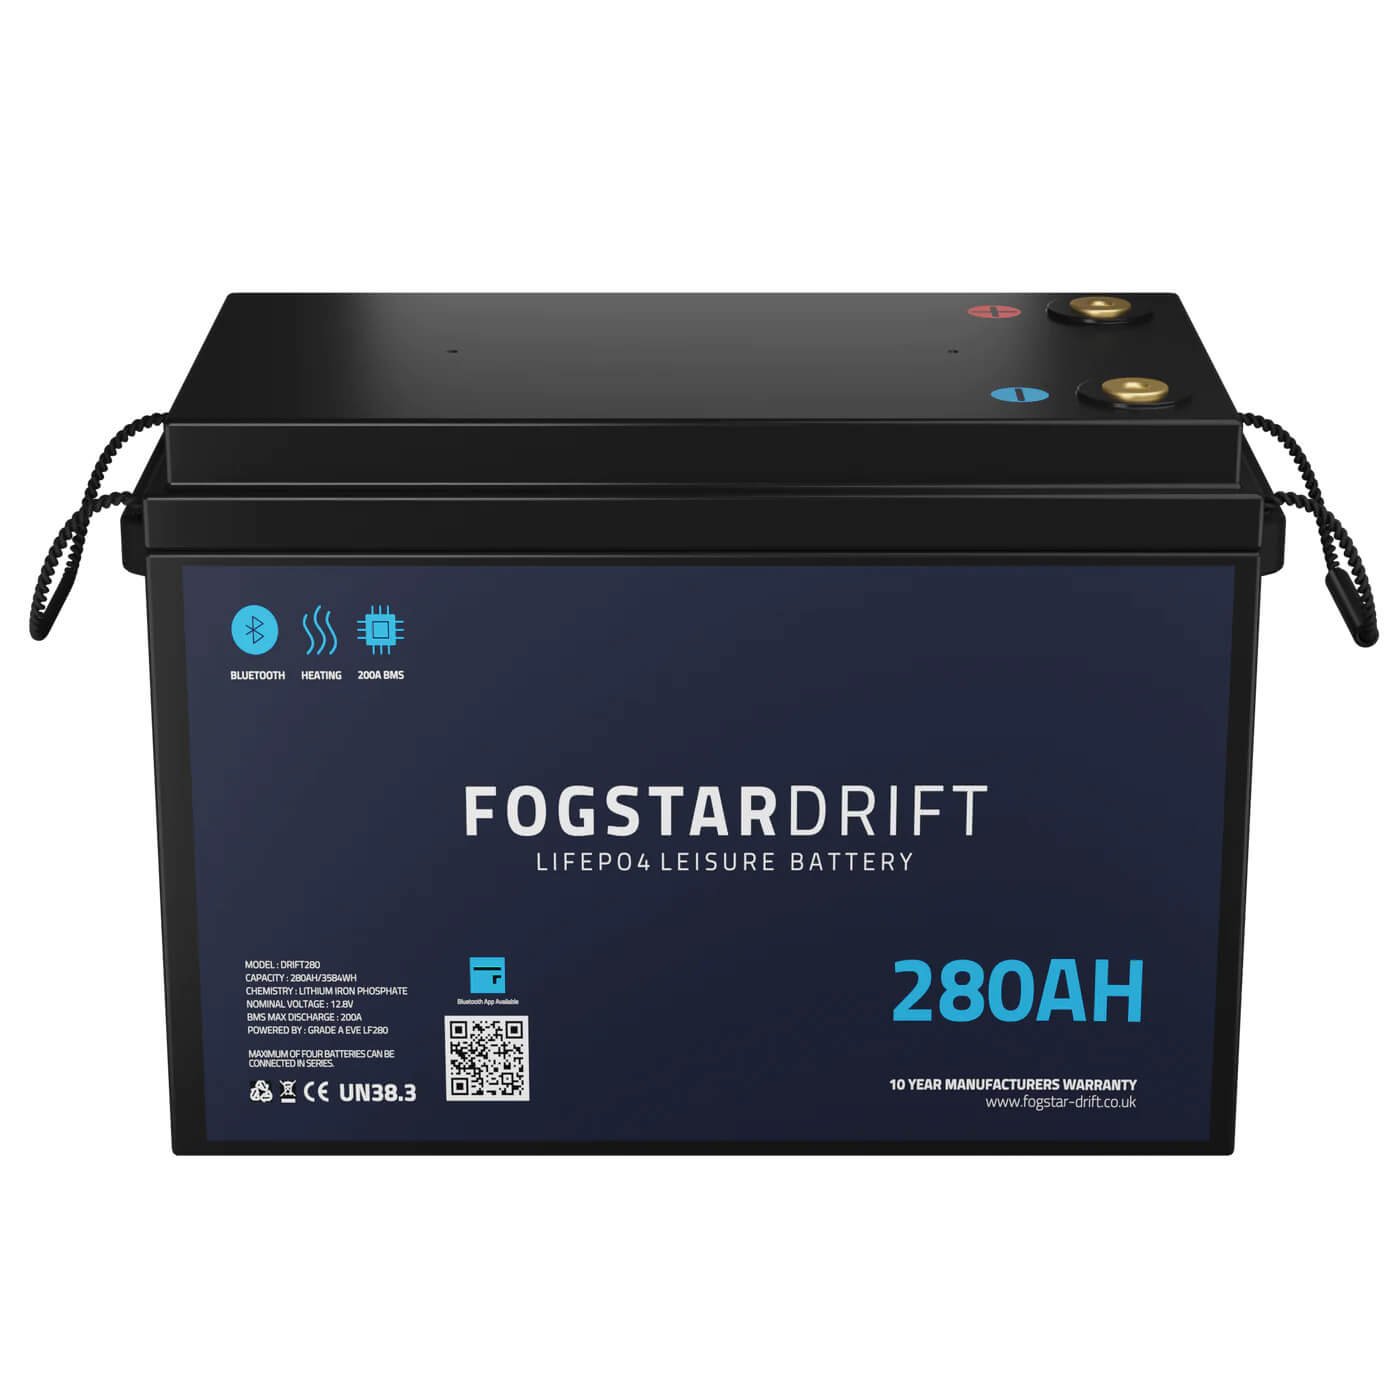 Fogstar Drift 280Ah - 12V lithium leisure battery